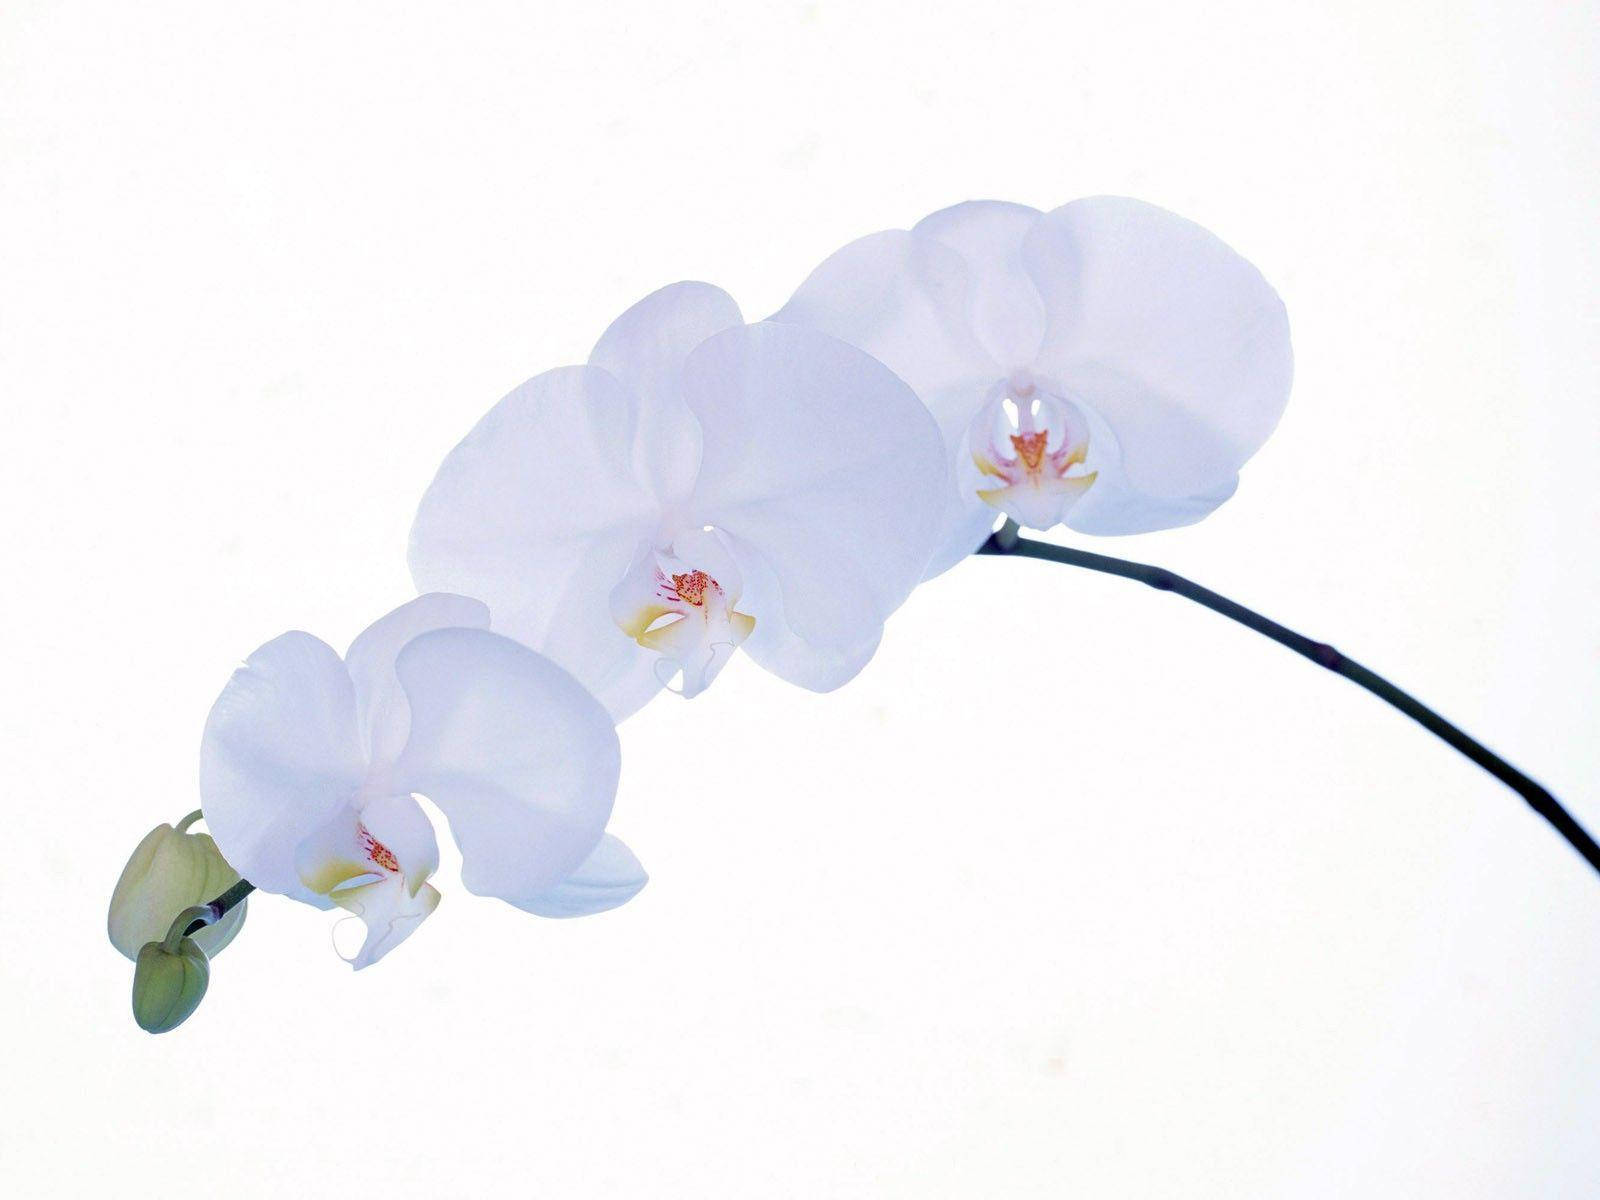 White Orchid Trio Wallpaper